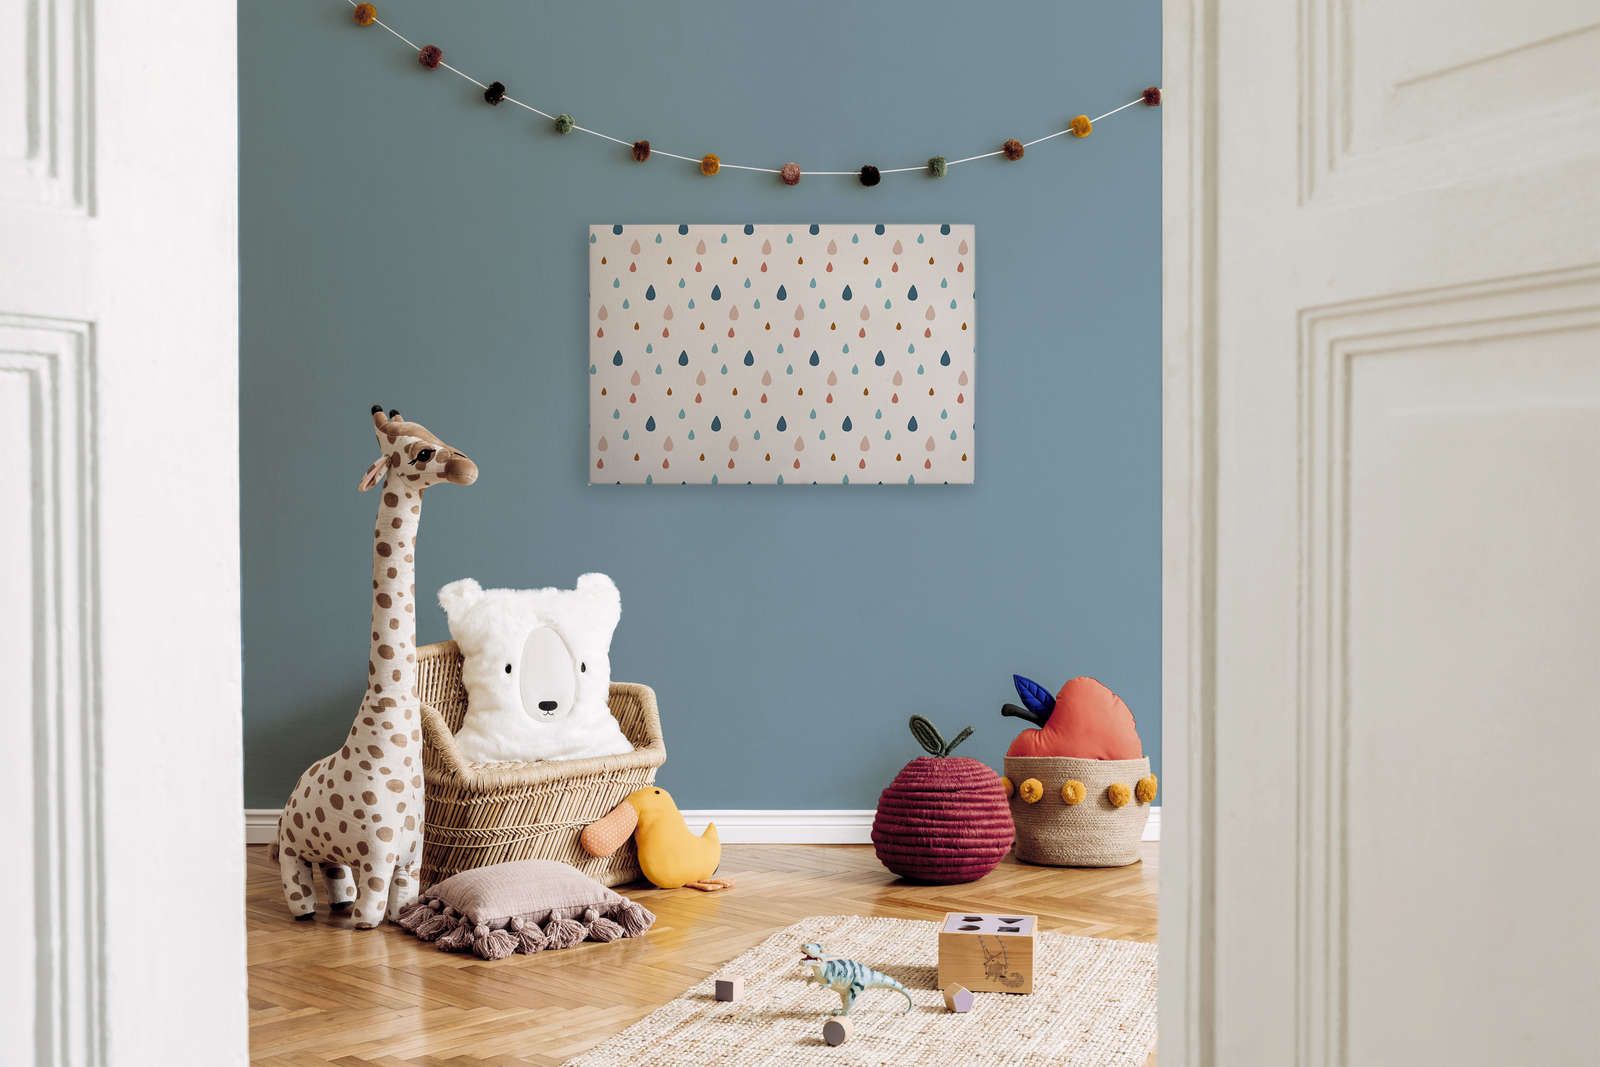             Leinwand fürs Kinderzimmer mit bunten Wassertropfen – 90 cm x 60 cm
        